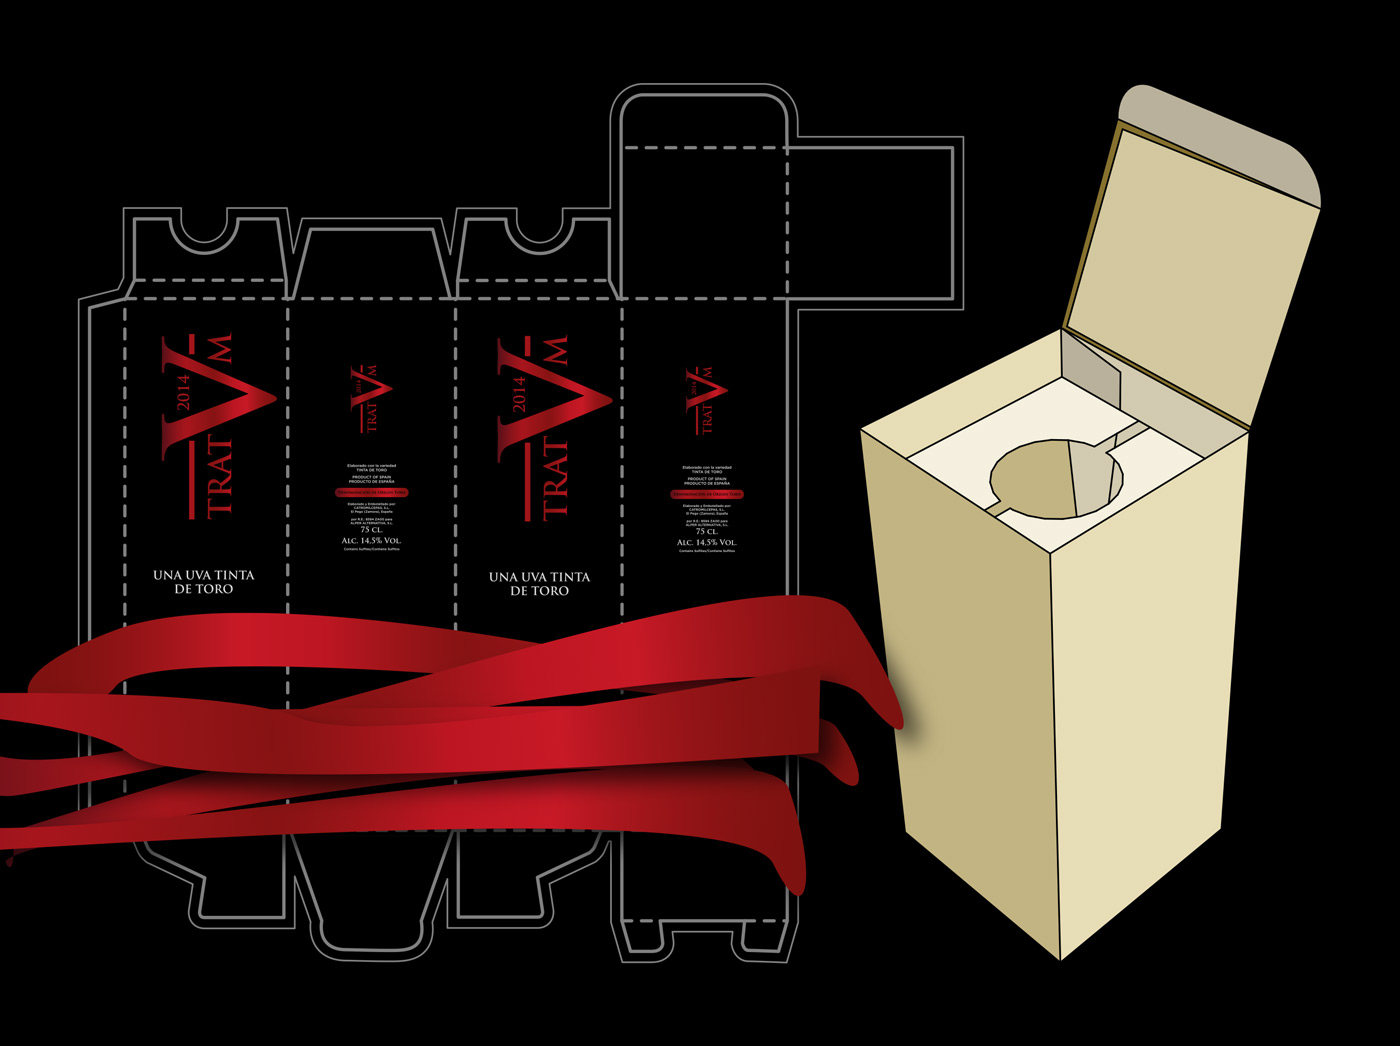 Diseño gráfico y creativo de etiquetas y packaging de vino para TRATVM